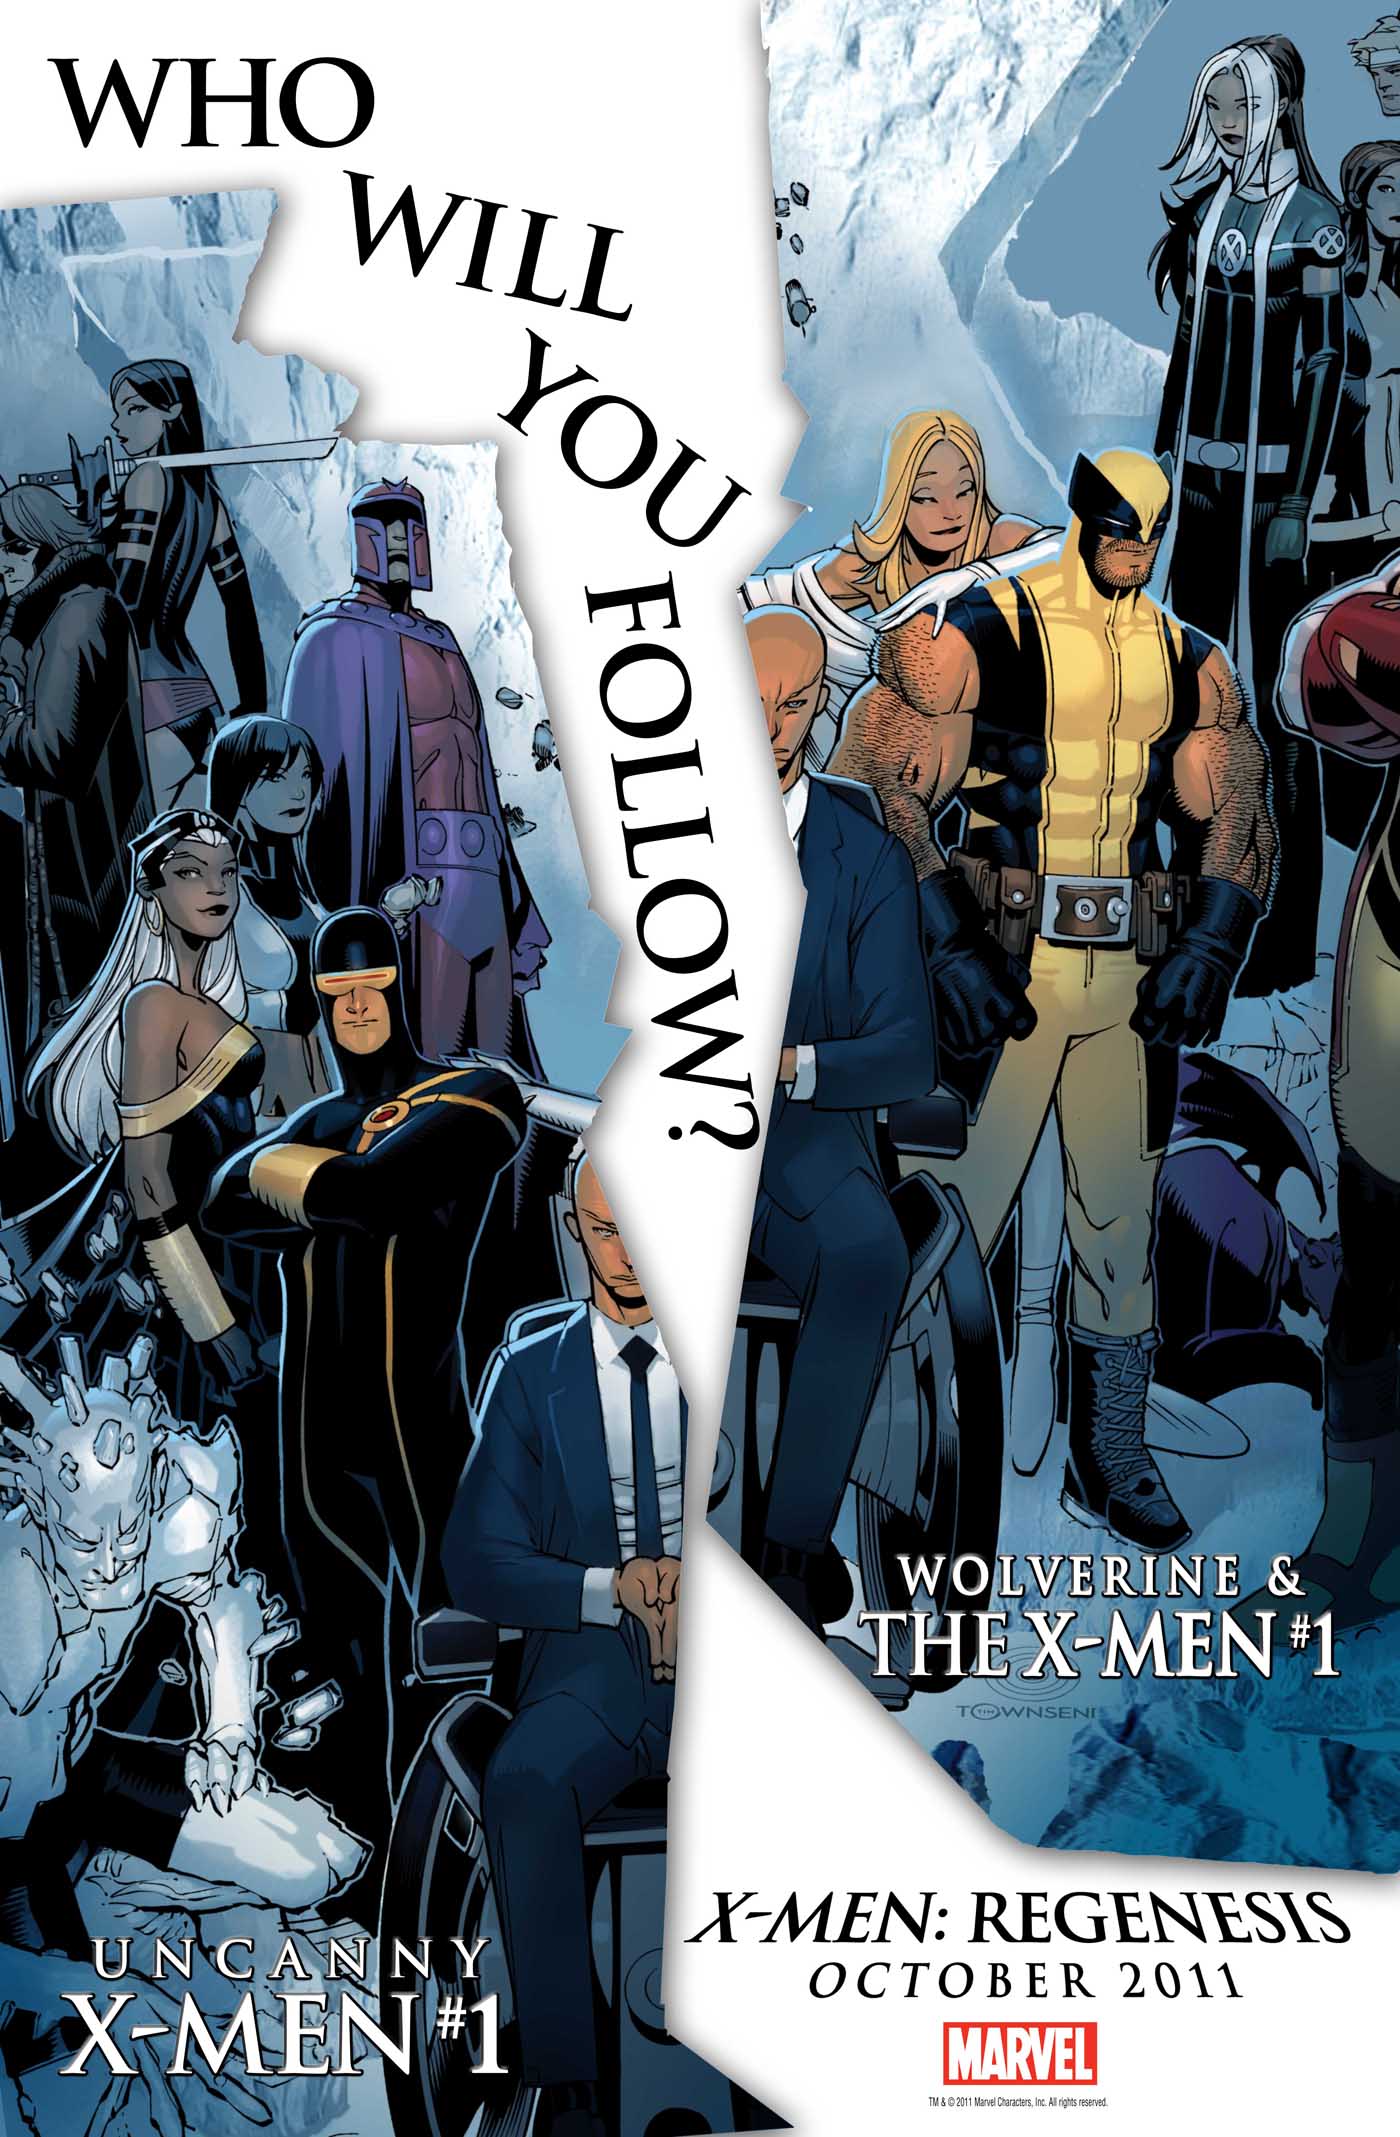 X-men: Schism #8